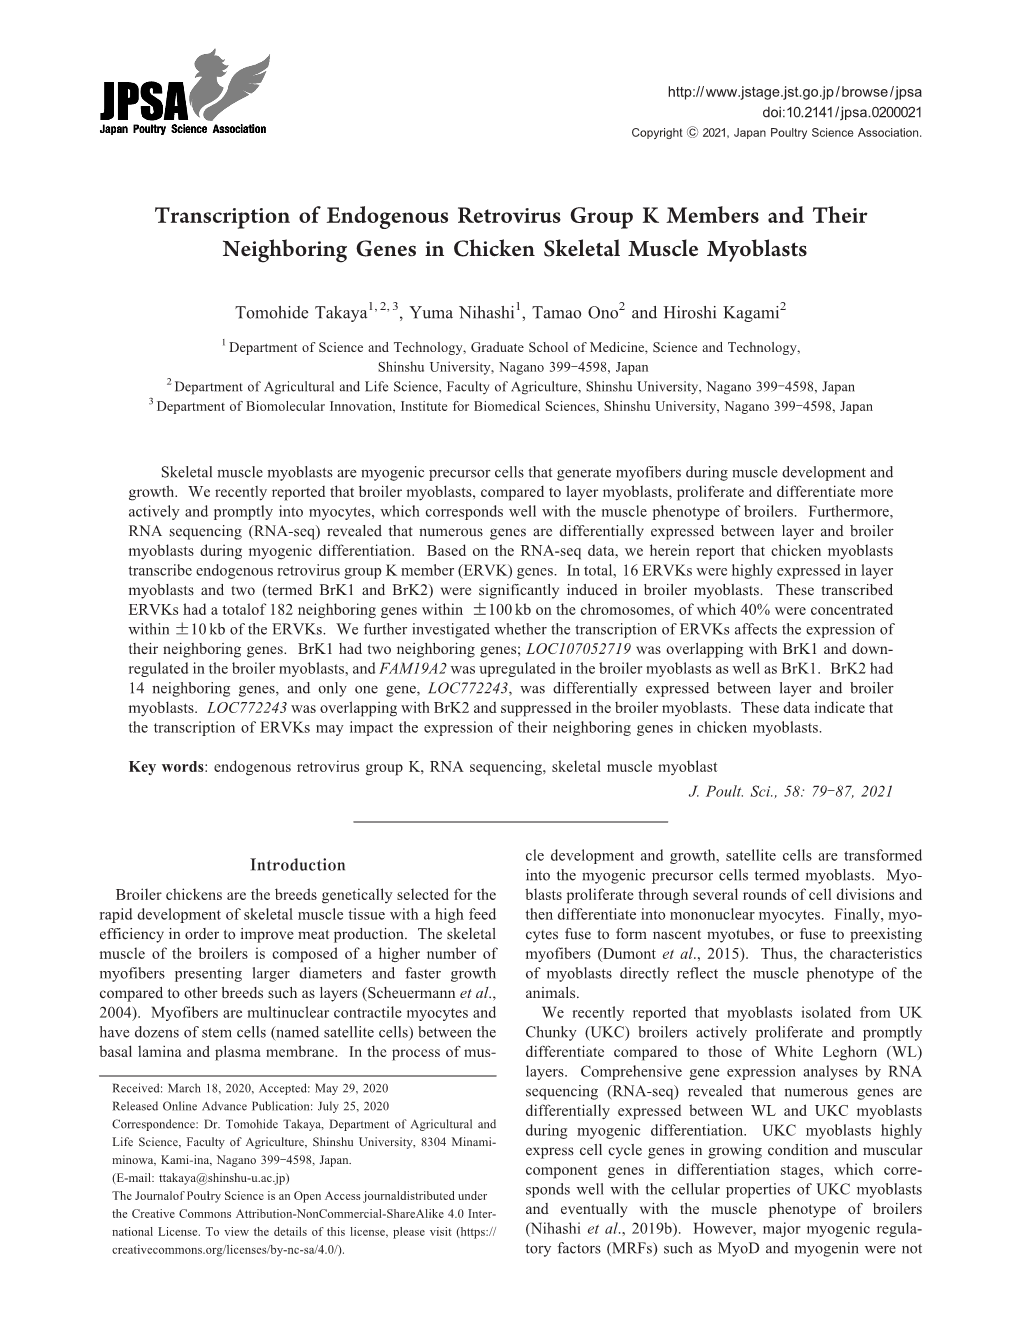 Transcription of Endogenous Retrovirus Group K Members and Their Neighboring Genes in Chicken Skeletal Muscle Myoblasts